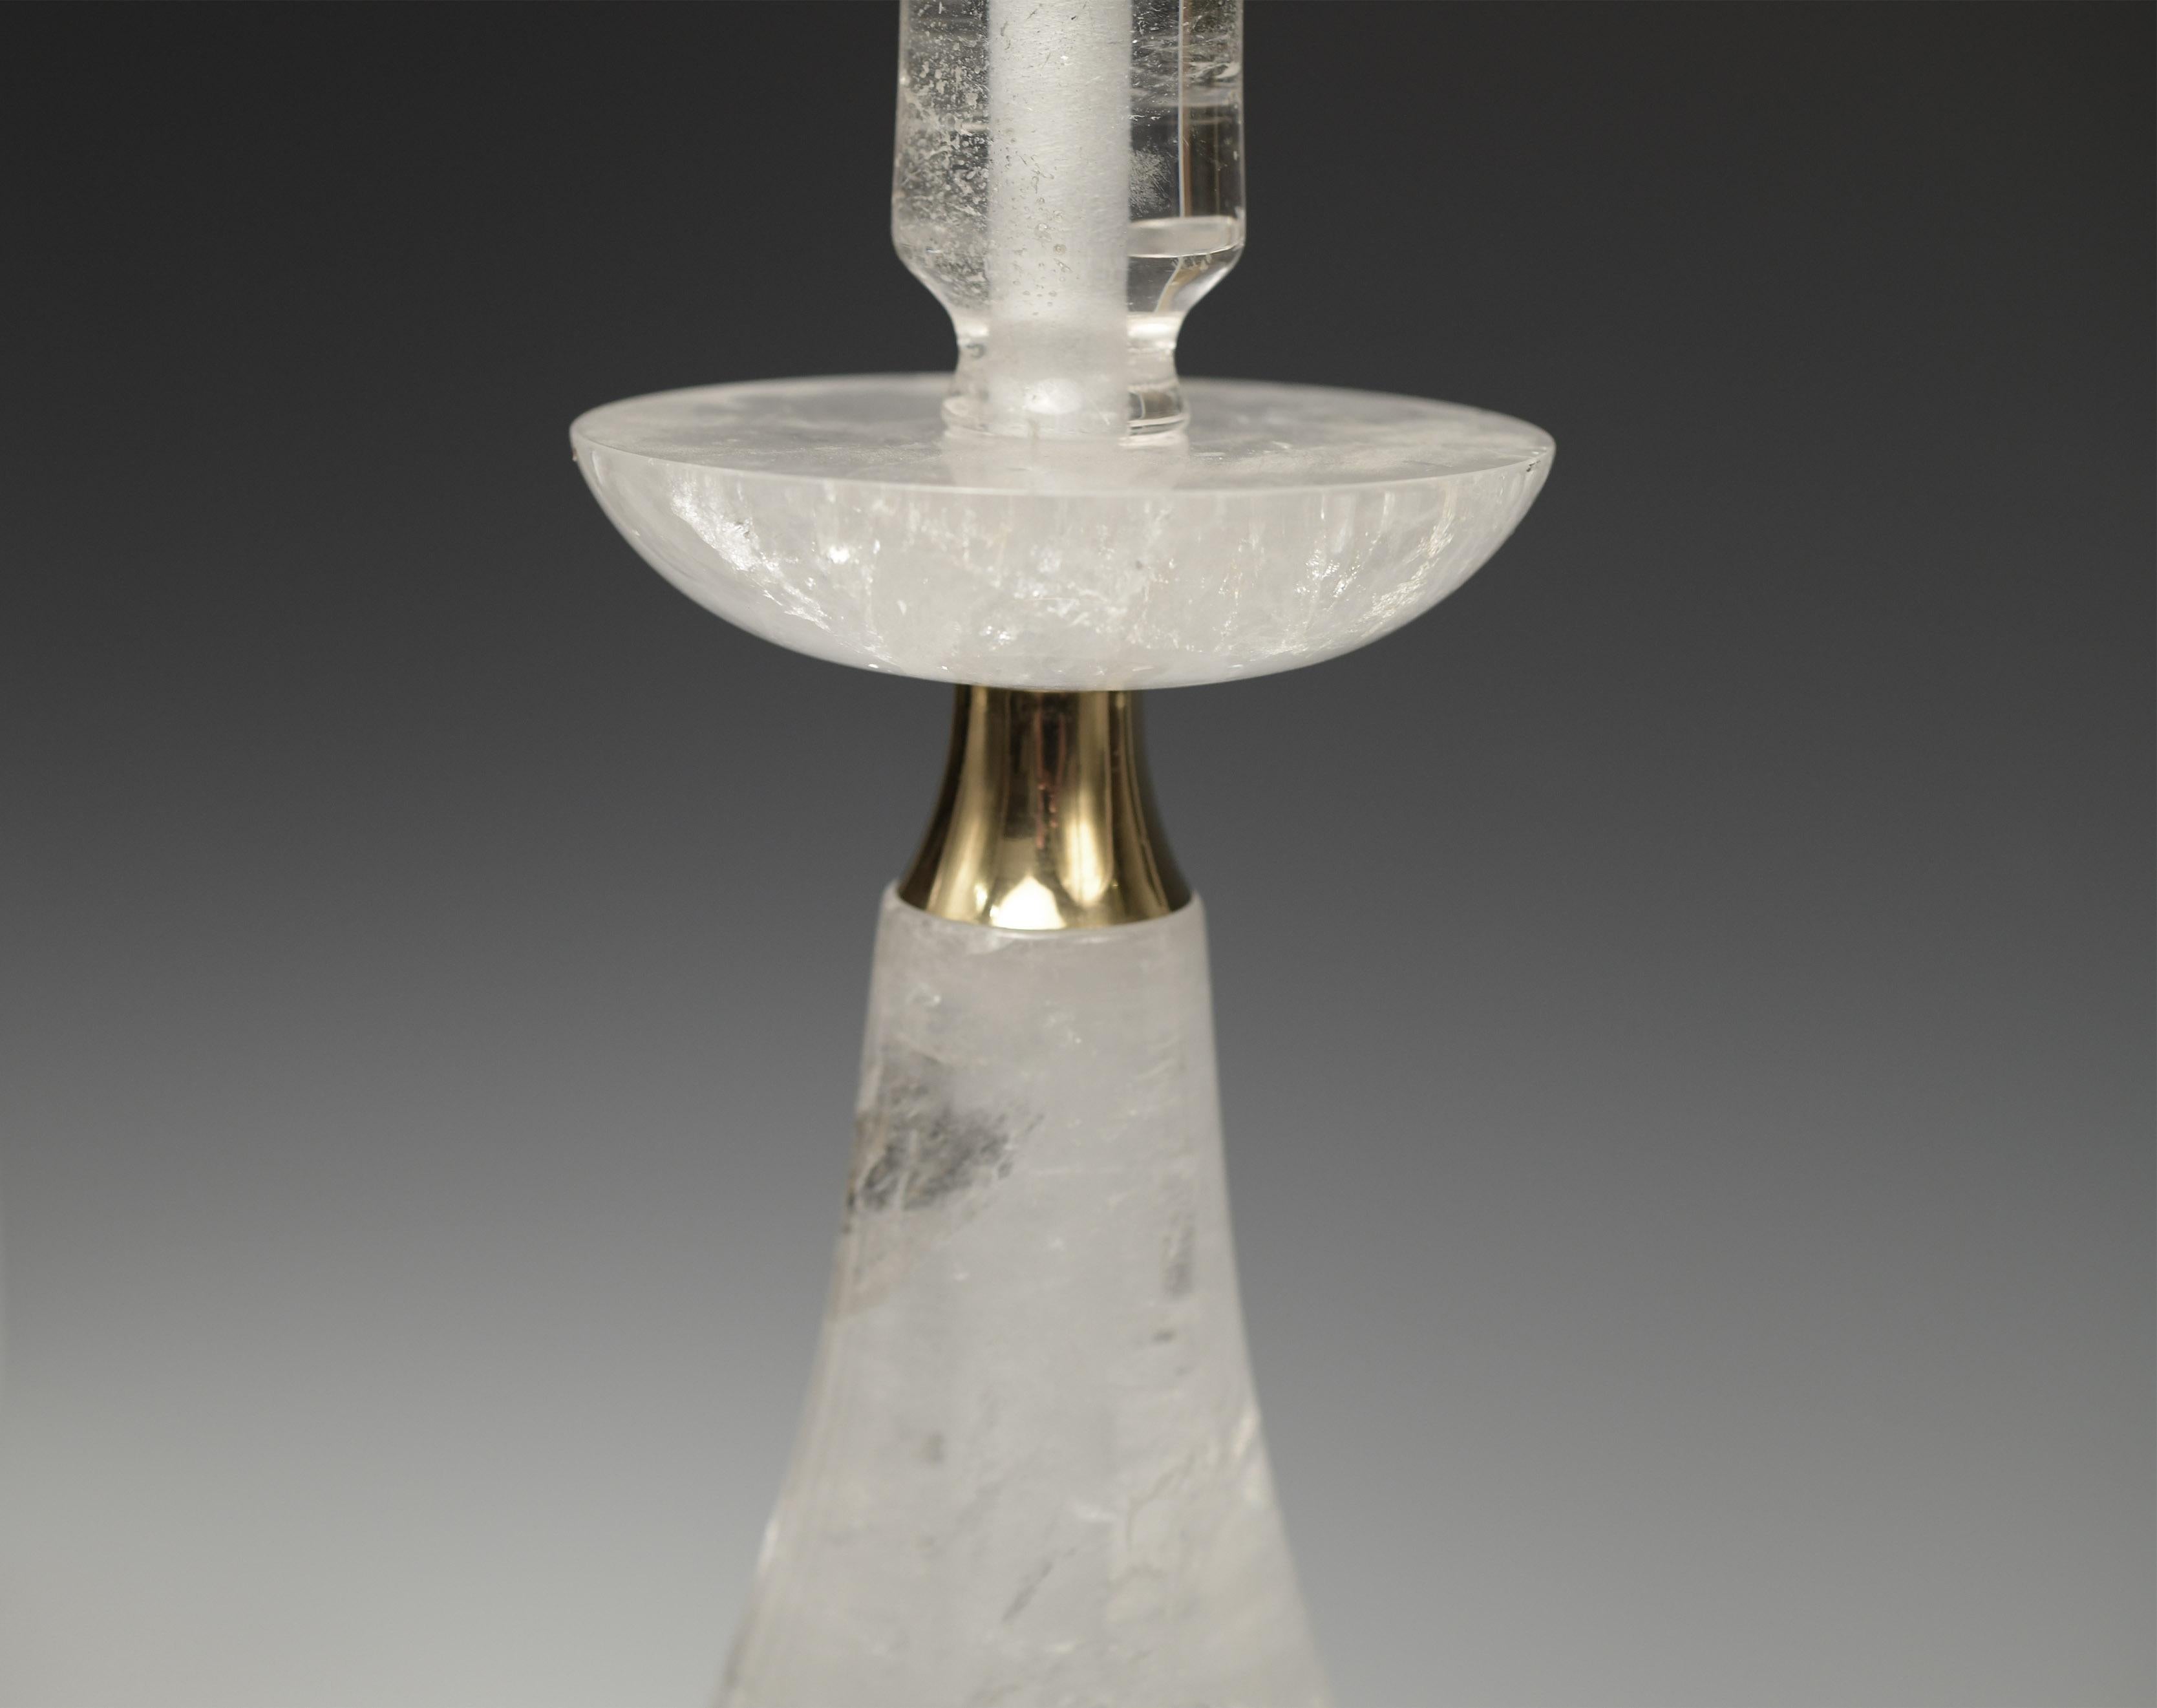 Paire de lampes en cristal de roche sculpté avec décoration en laiton poli. Créé par Phoenix Gallery, NYC.
Jusqu'au sommet du cristal de roche : 23